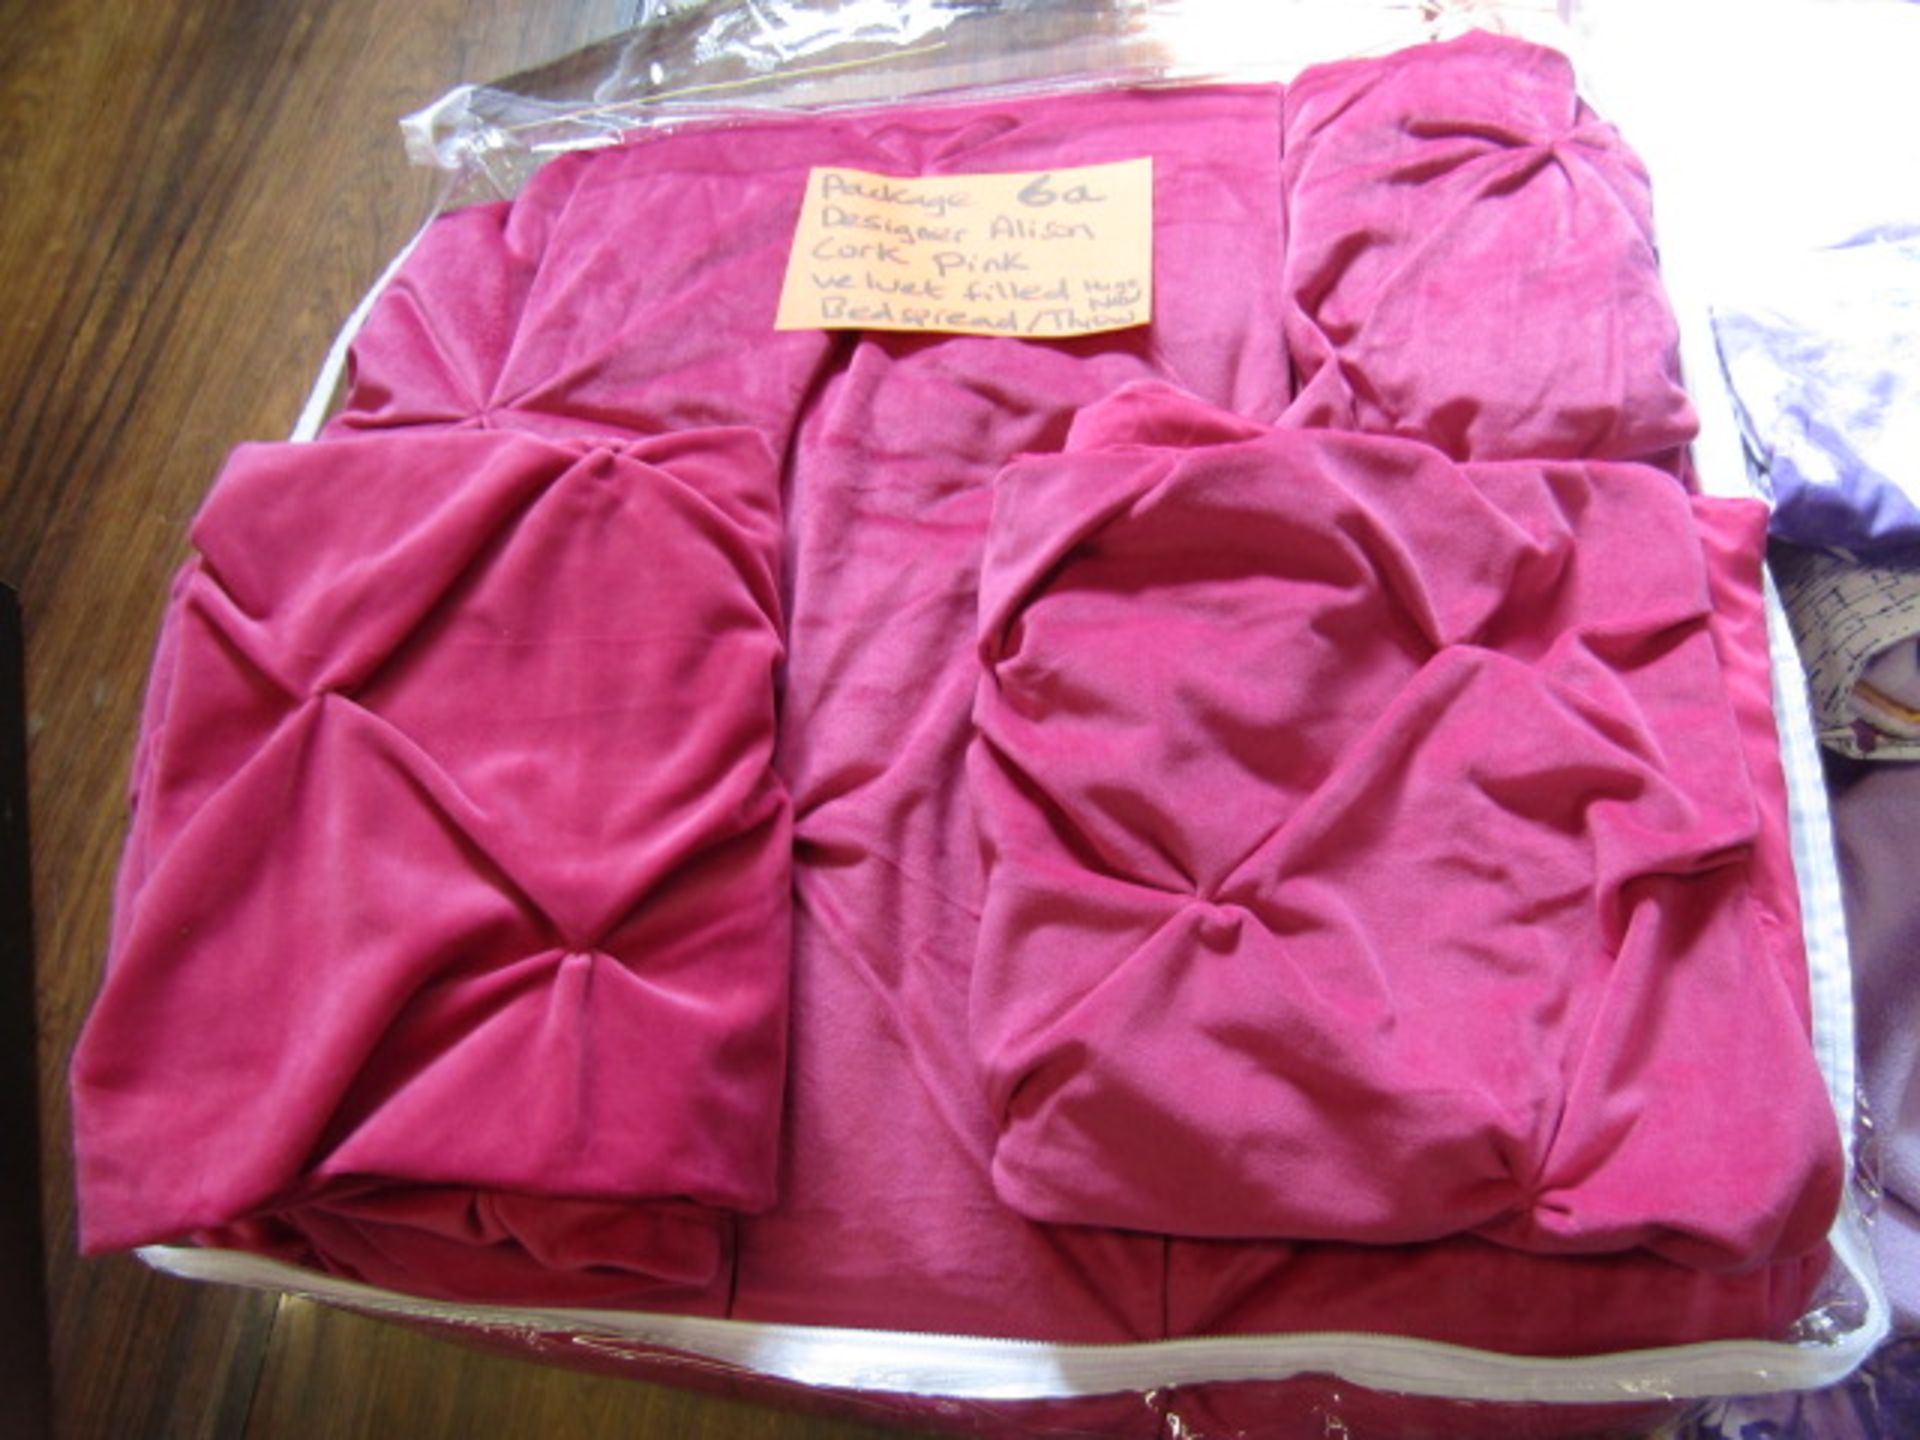 Designer Alice Cork super soft heavy pink quilted bedspread and a super soft fleece duvet set - Image 4 of 7